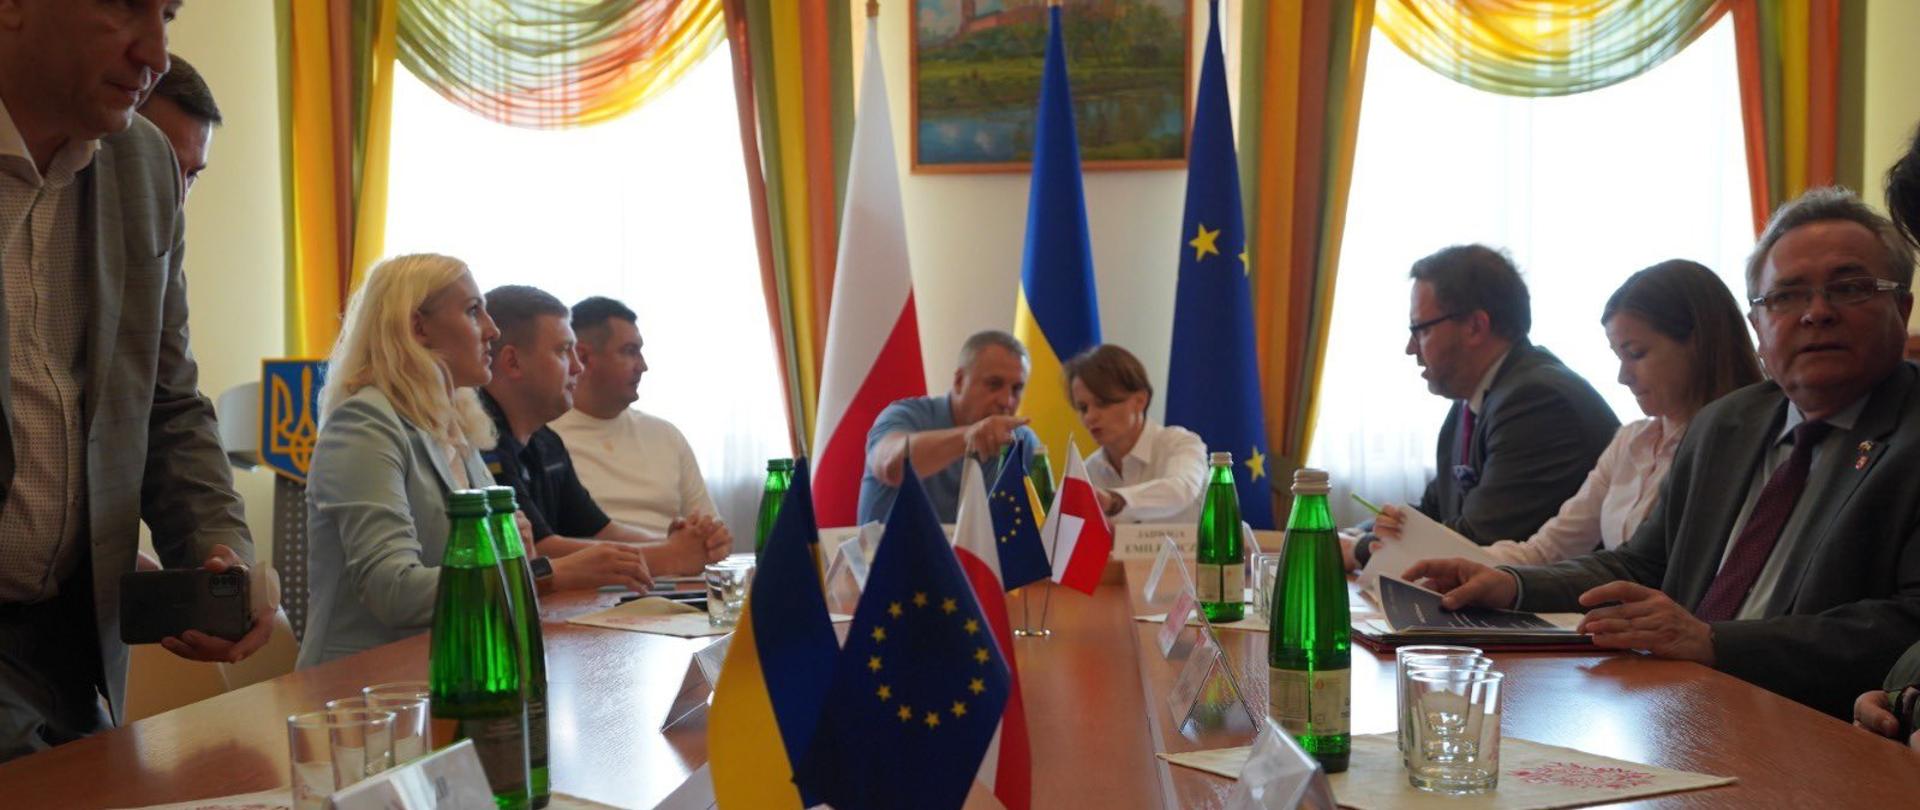 Przy stole siedzi kilka osób, w tym pełnomocnik rządu Jadwiga Emilewicz. Na stole flagi Polski, Ukrainy i UE.